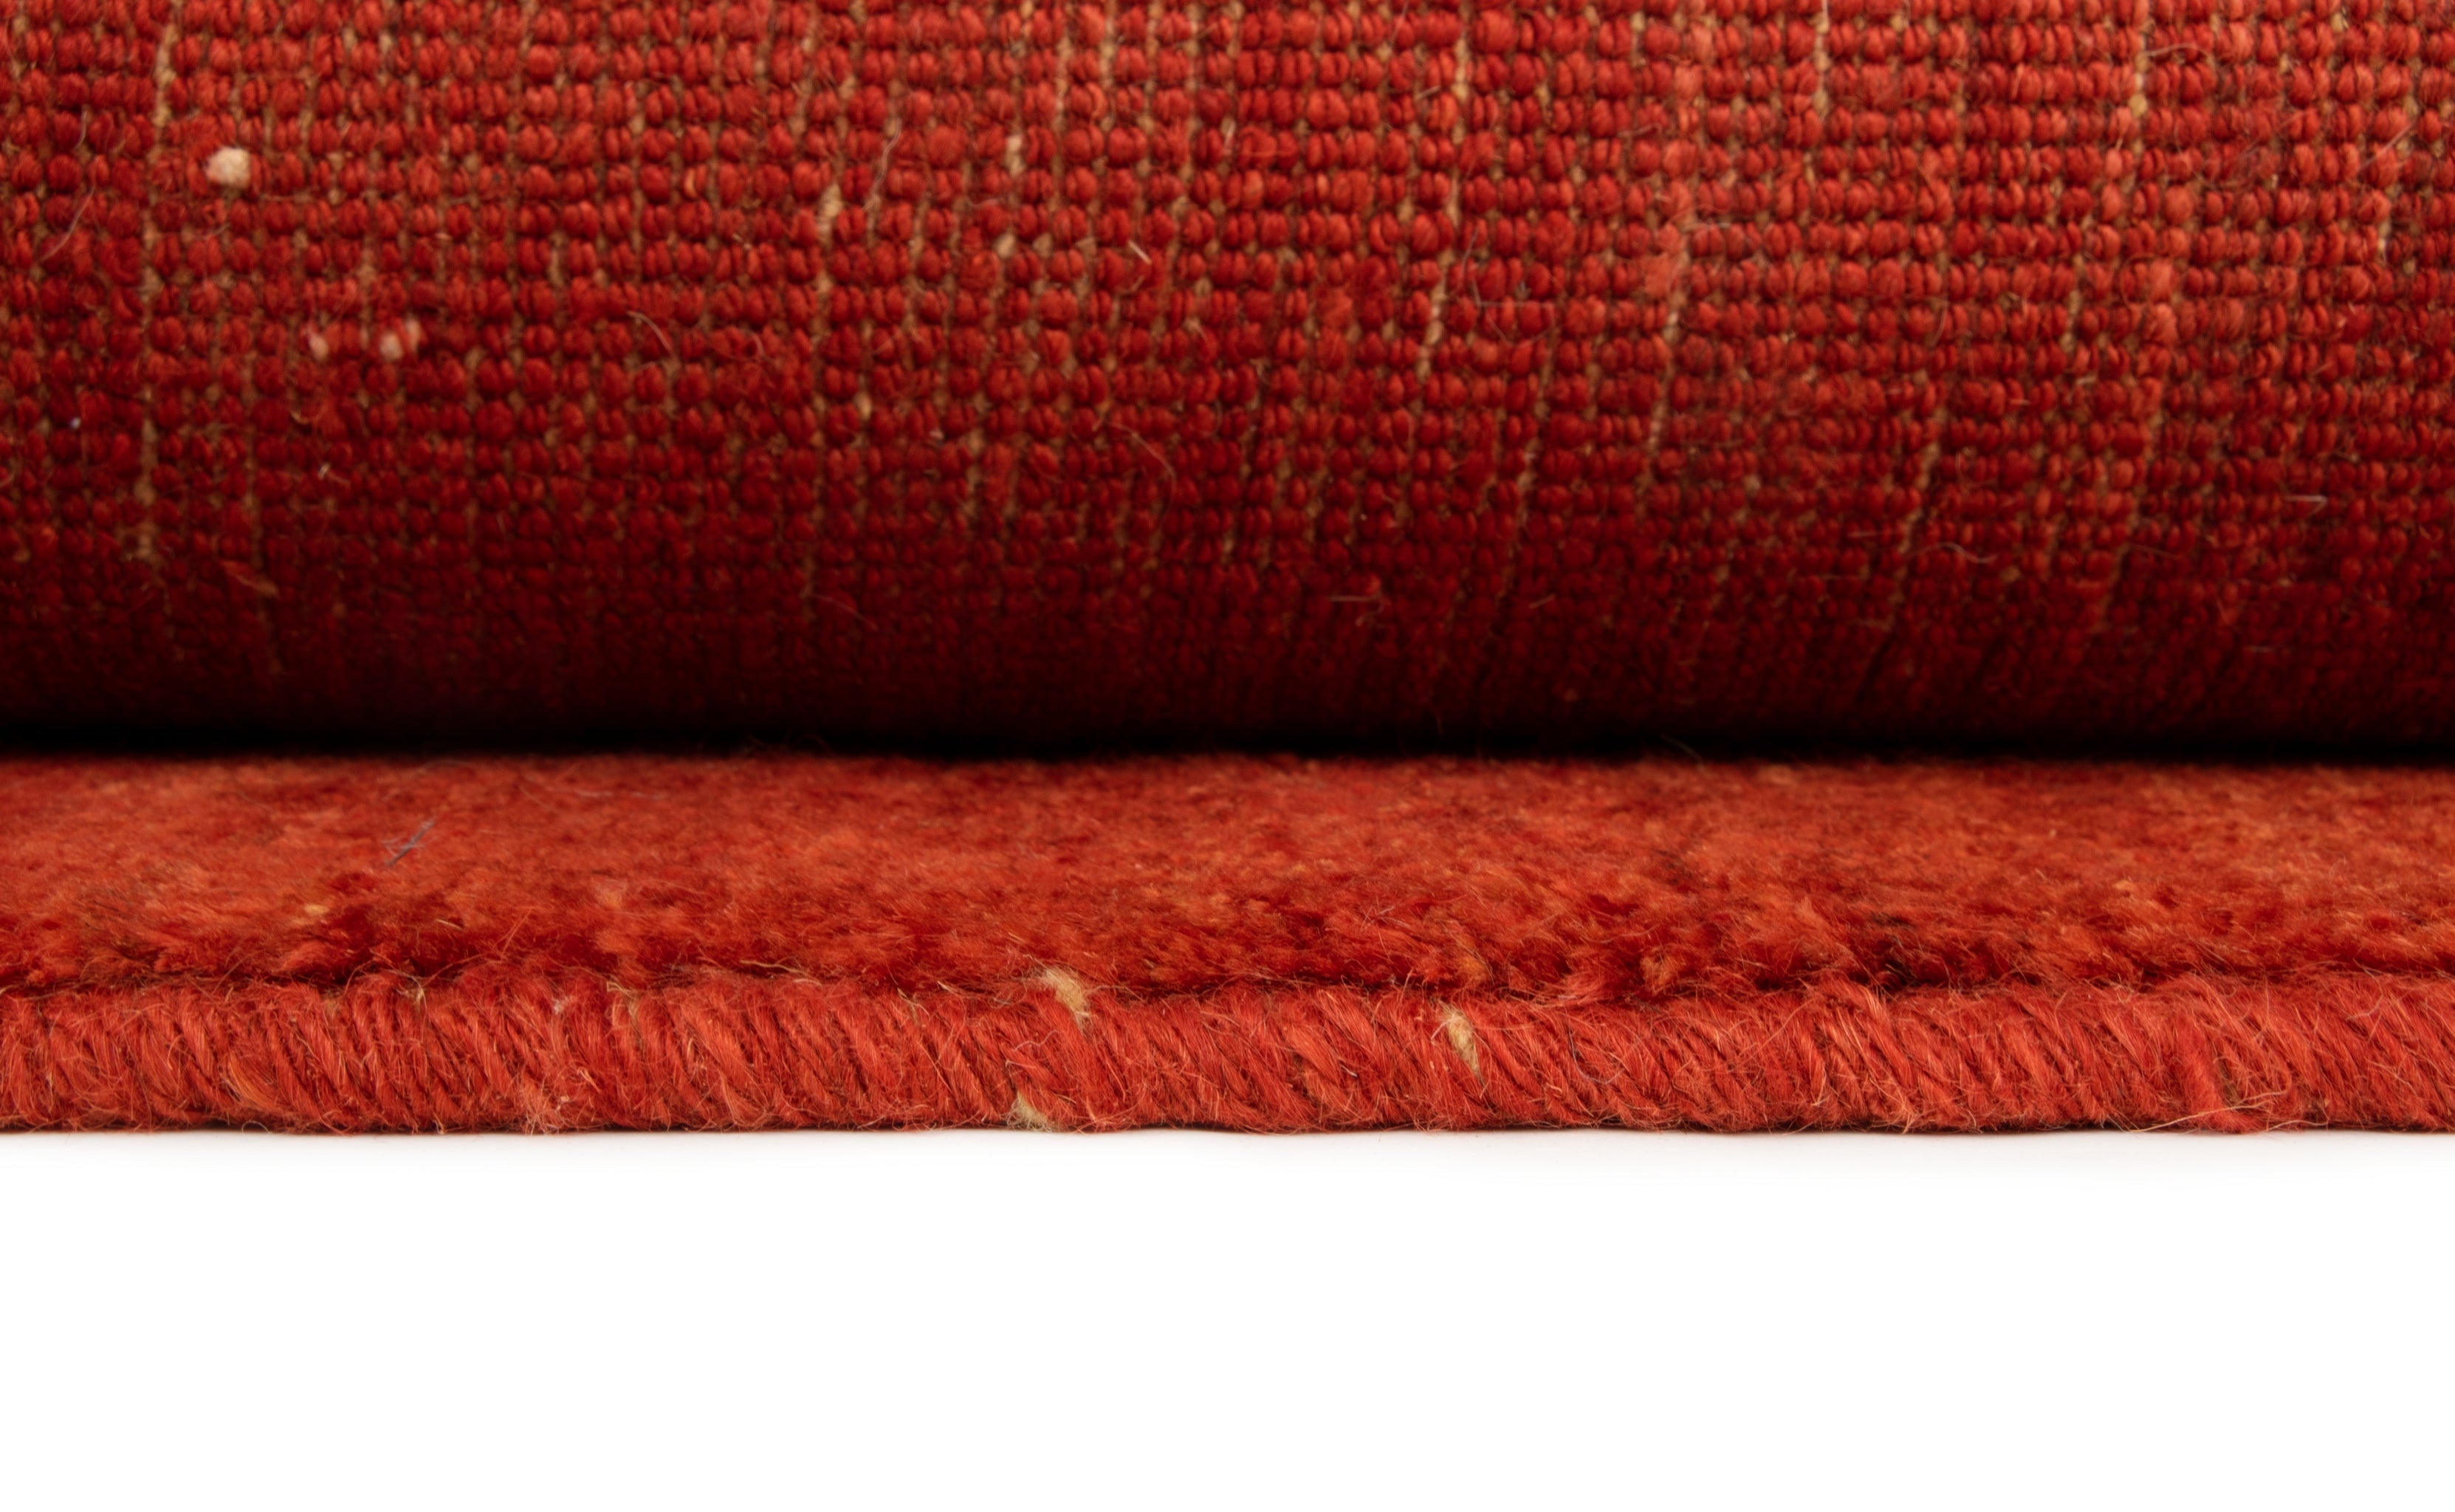 143x215 Gabbeh in Rot präsentiert im Onlineshop von KAQTU Design AG. Teppich ist von Vidal